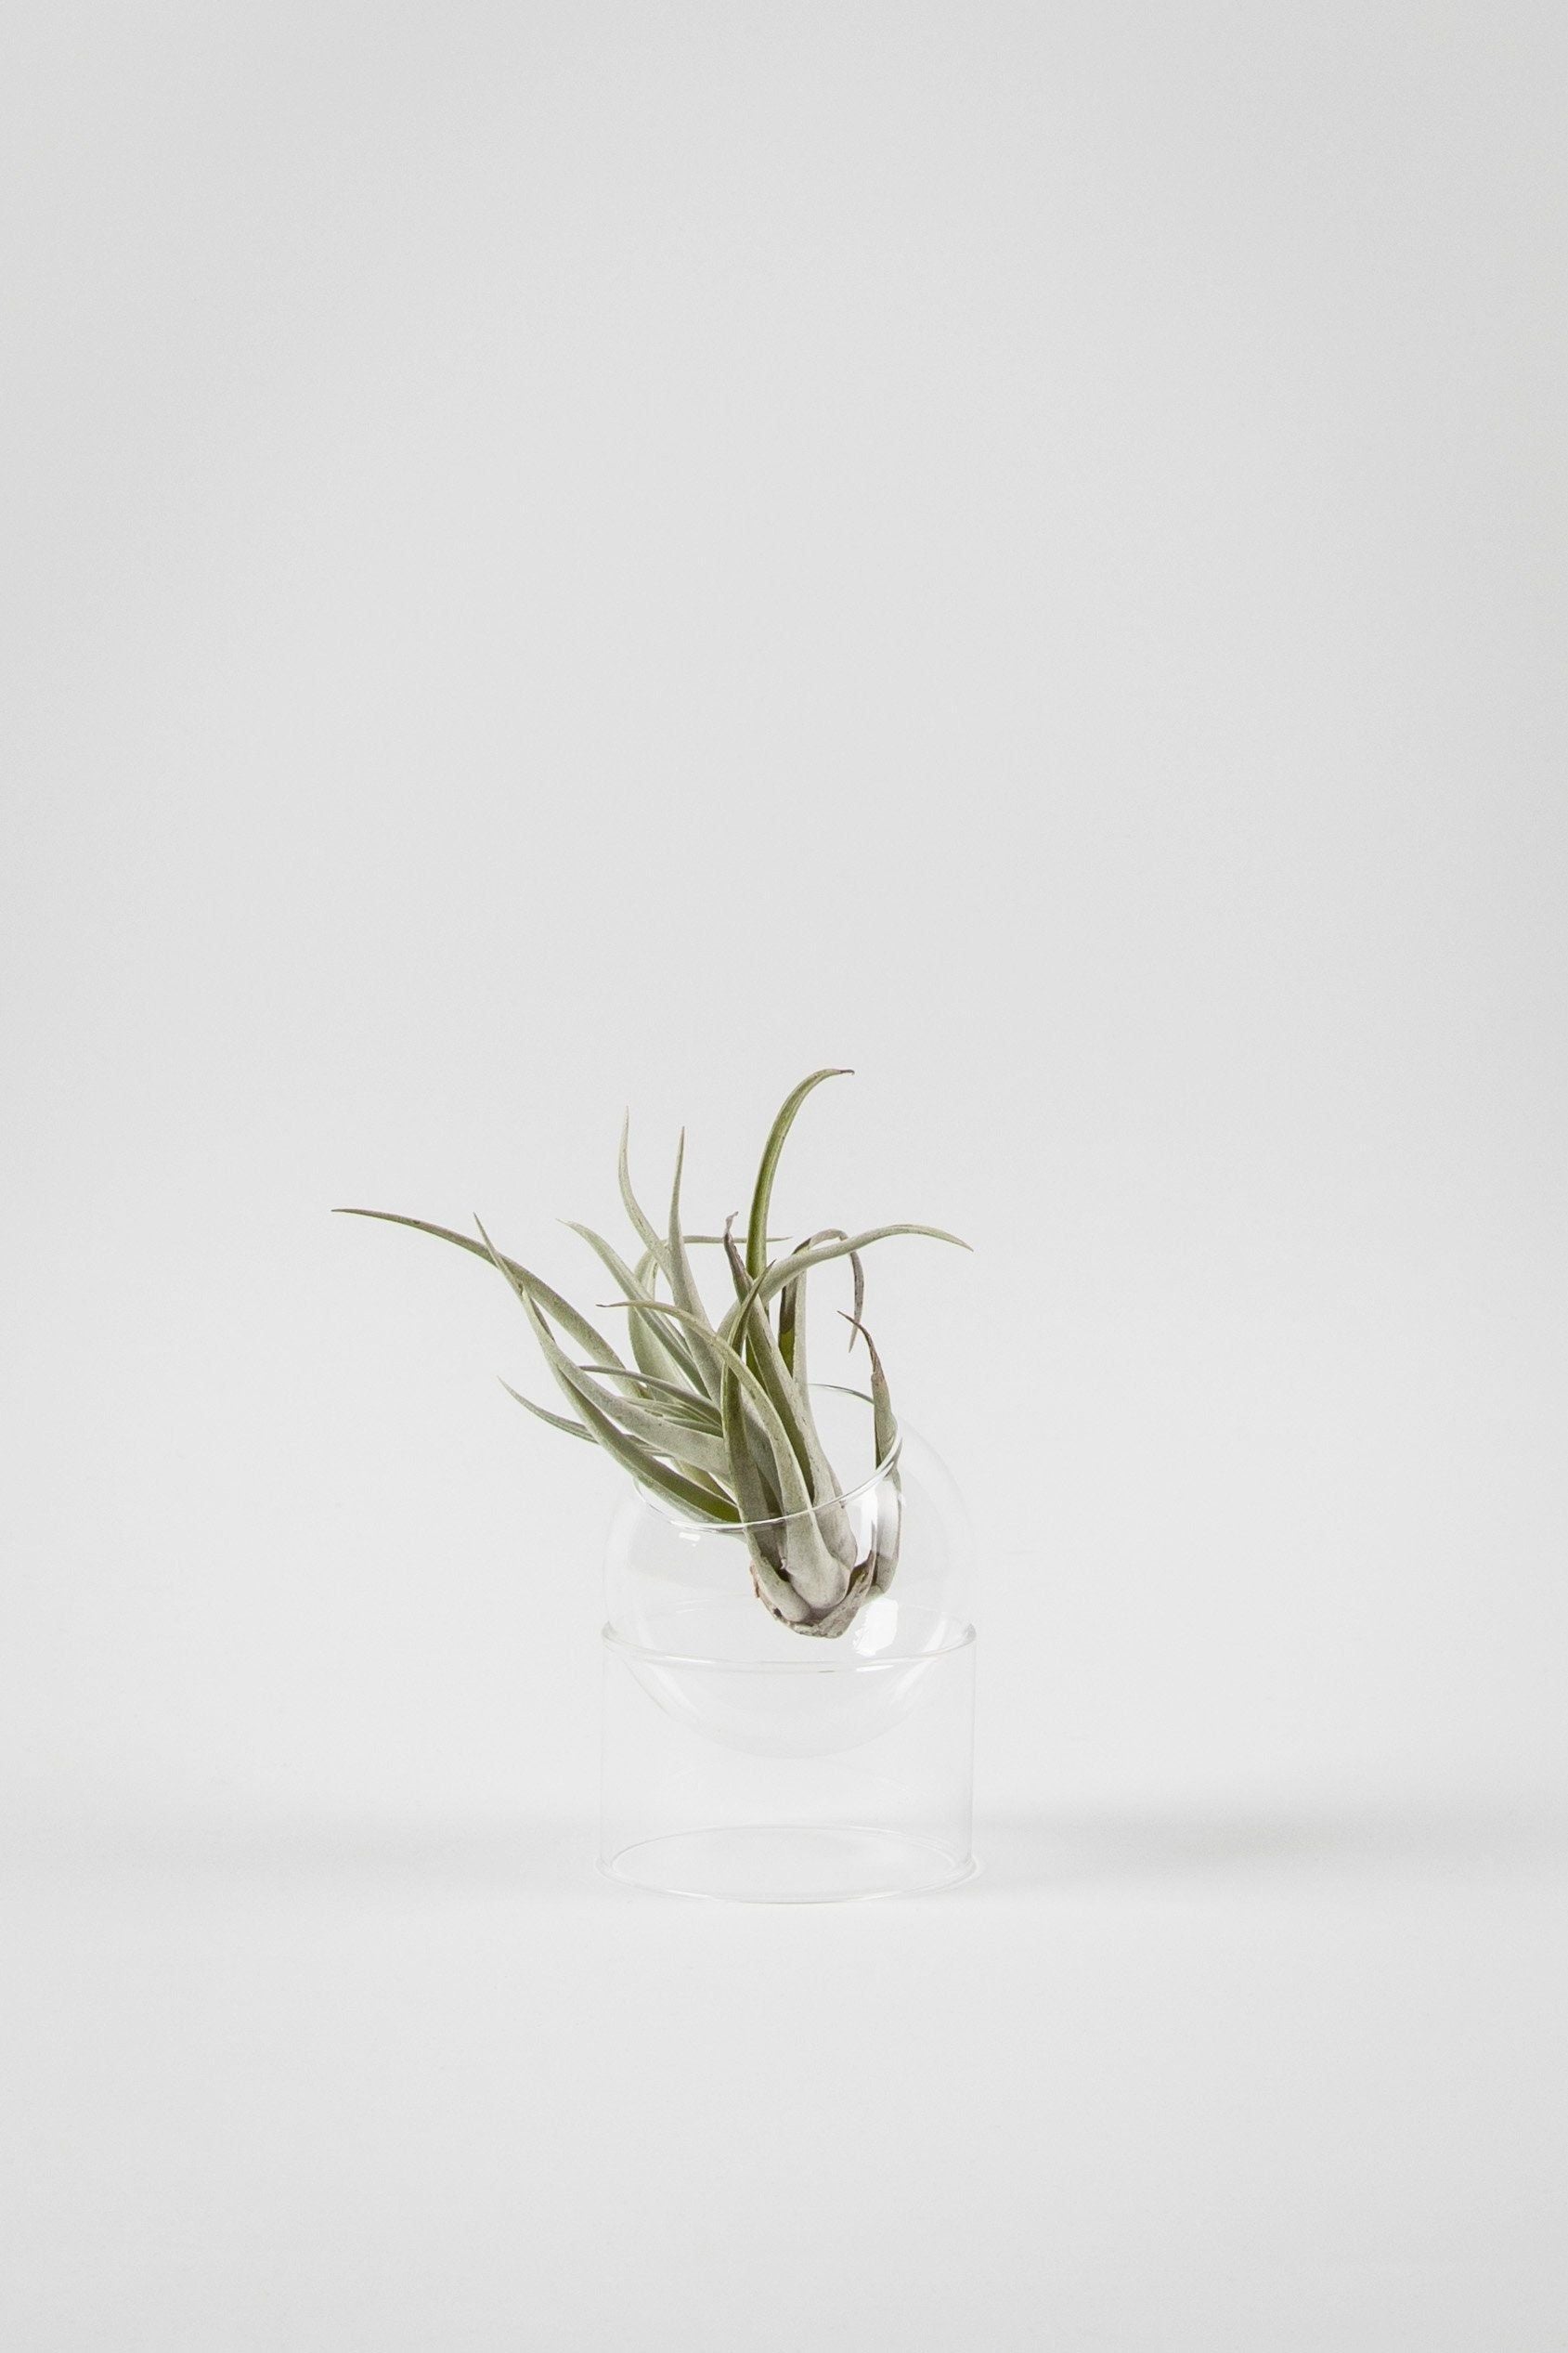 Studio sul vaso a bolle di piante in piedi, trasparente